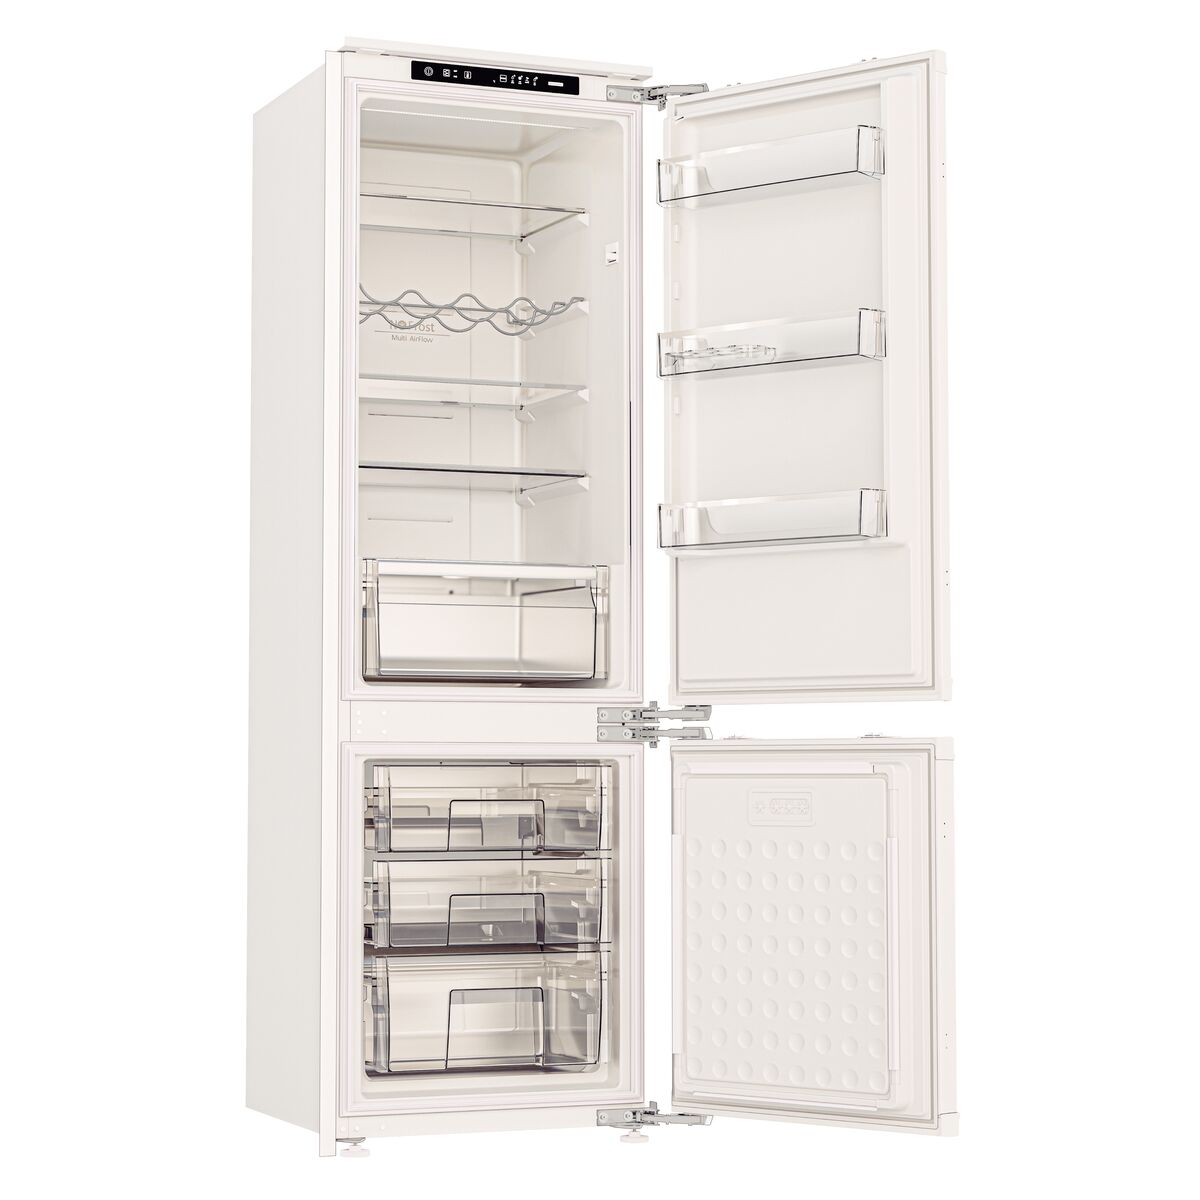 Refrigerador de Revestir/Embutir Tramontina 220 V Frost Free 250 L